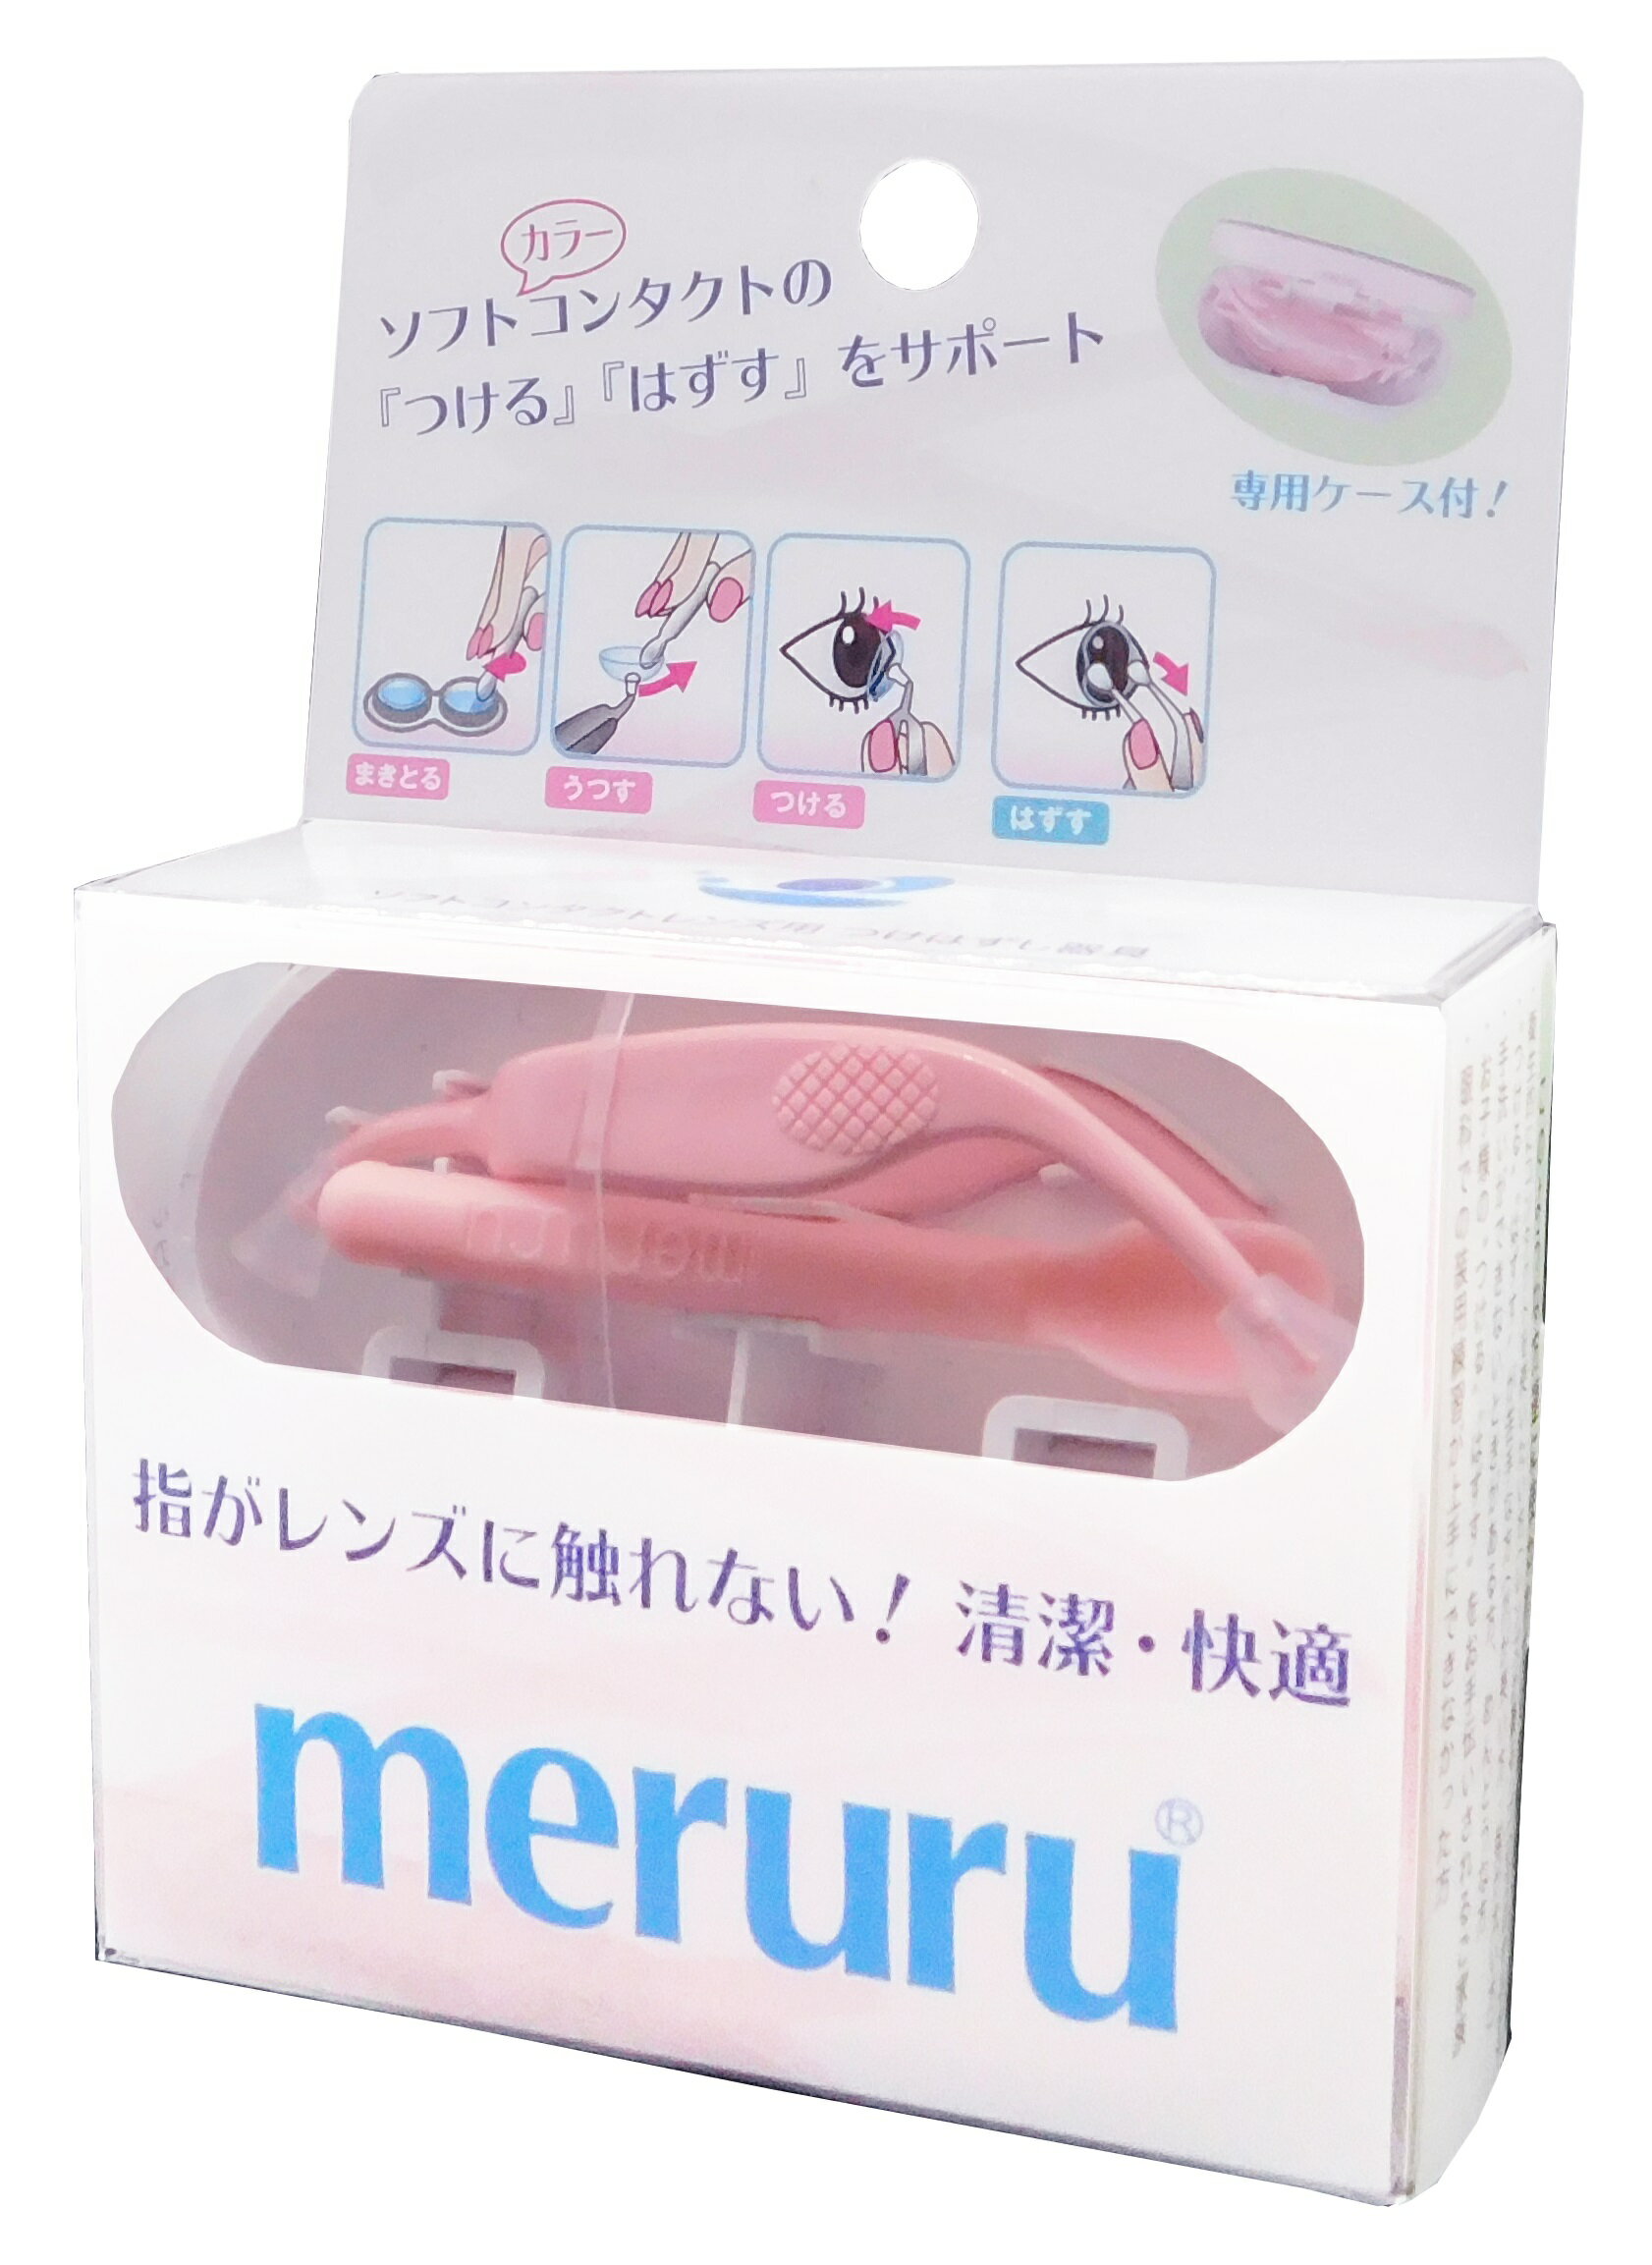 メルル meruru ソフトコンタクトレンズつけはずし器具 カラコン 簡単 装着 取りはずし 指を使わない 清潔 ネイルしたままでも コンタクト 装着器具 ピンセット スティック